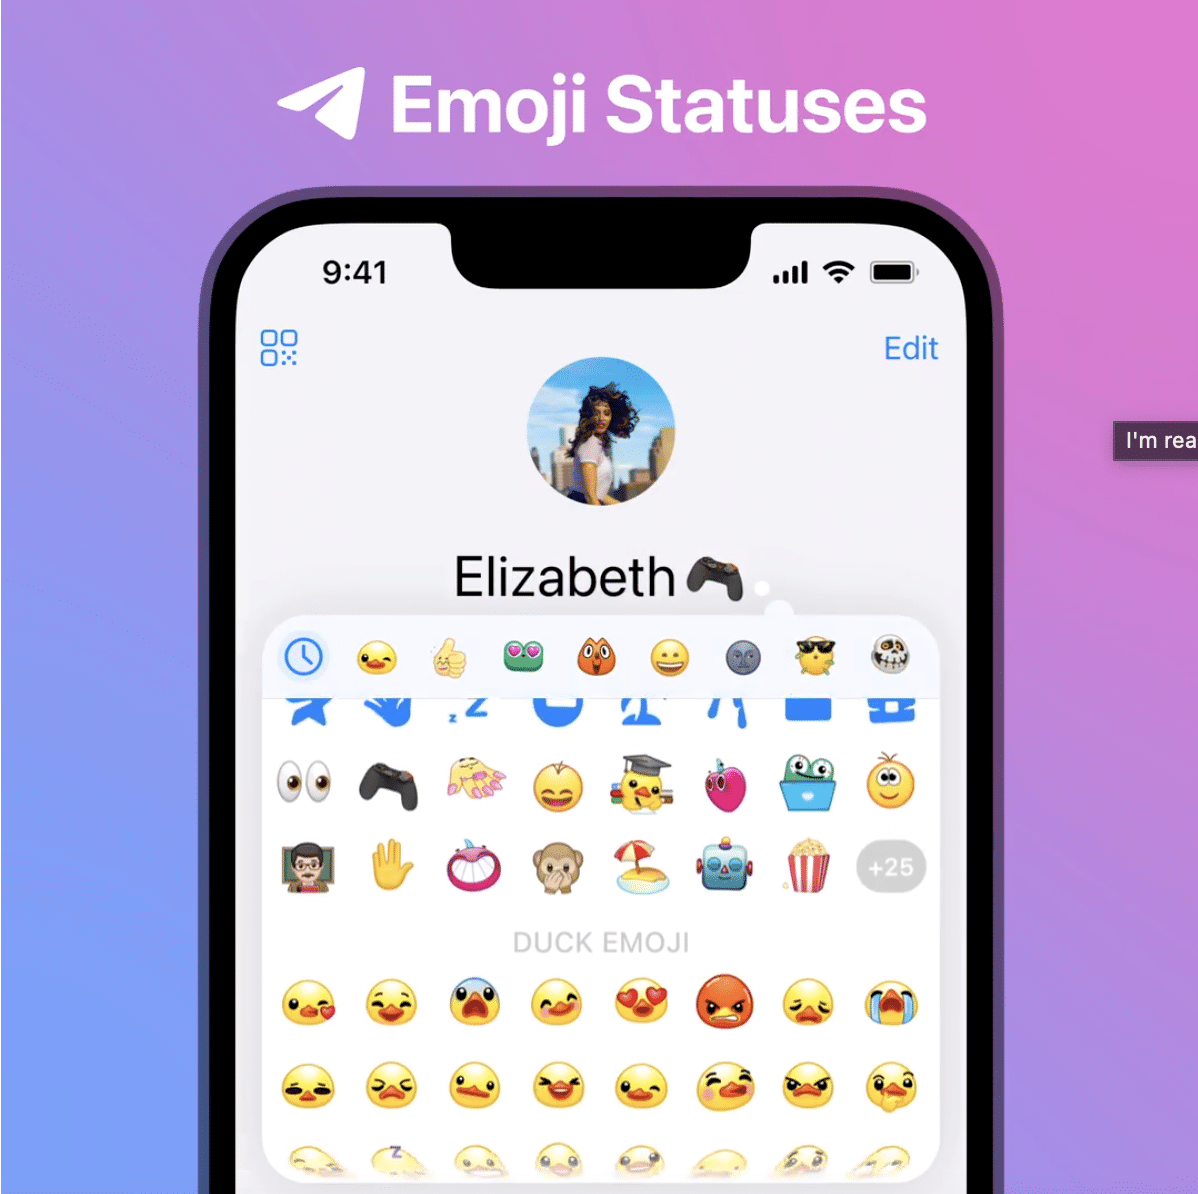 Emoji Statuses on Telegram